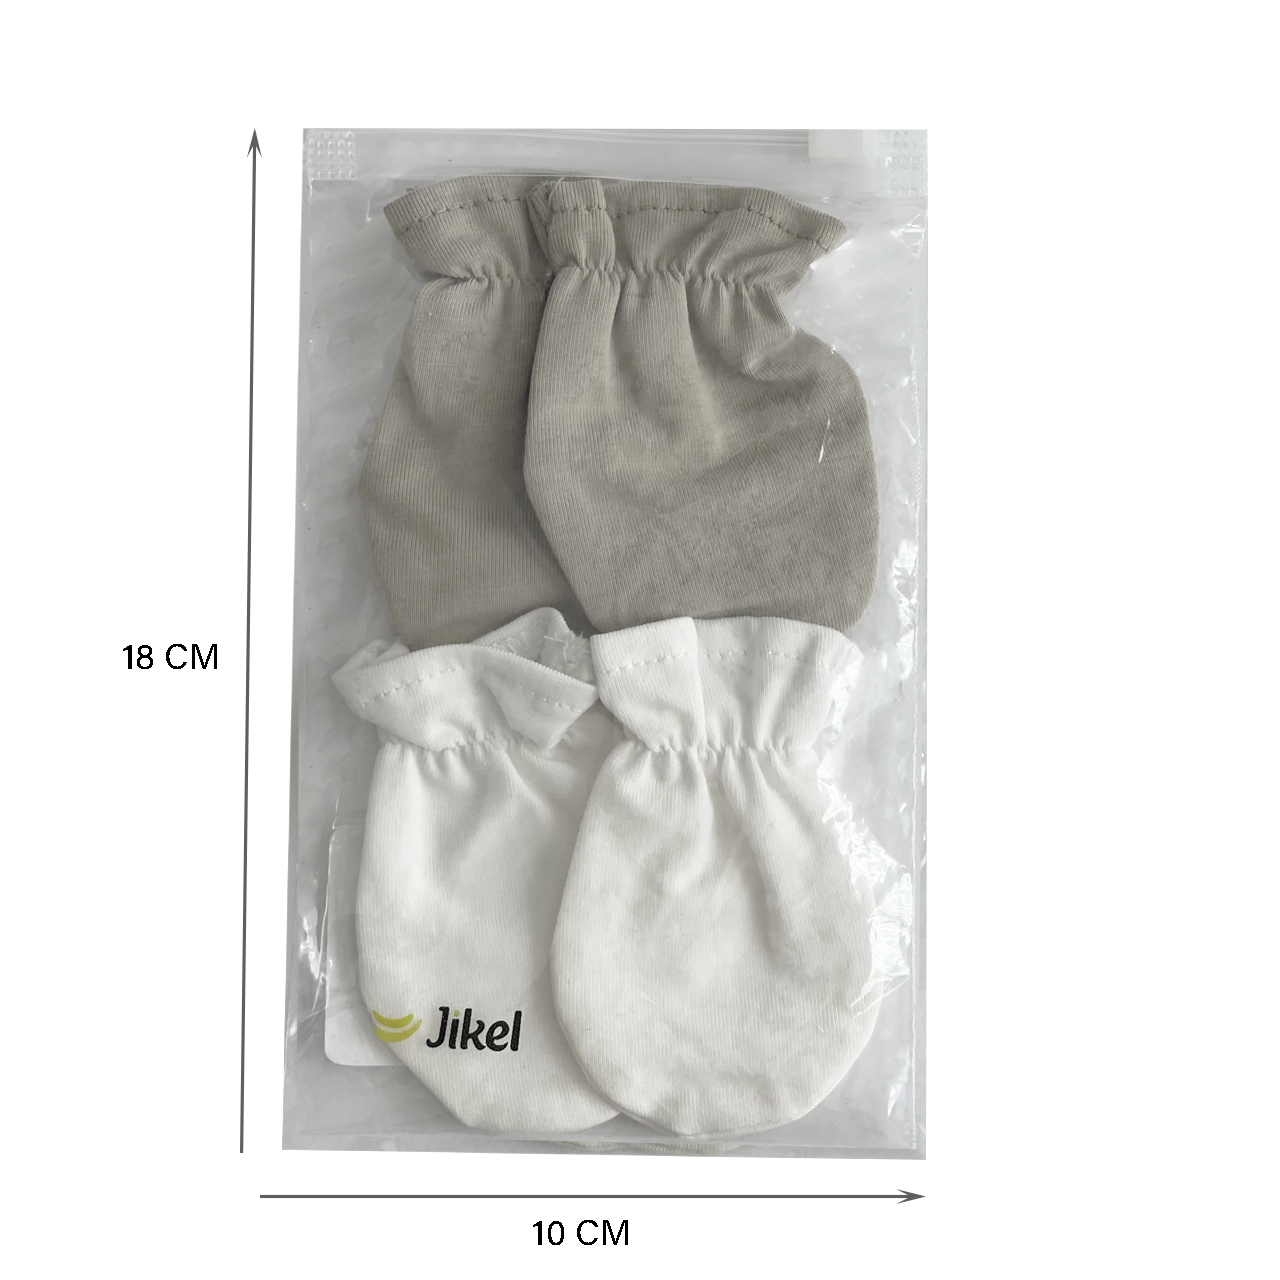 دستکش نوزادی جیکل مدل Jk902411-35 بسته 2 عددی -  - 3